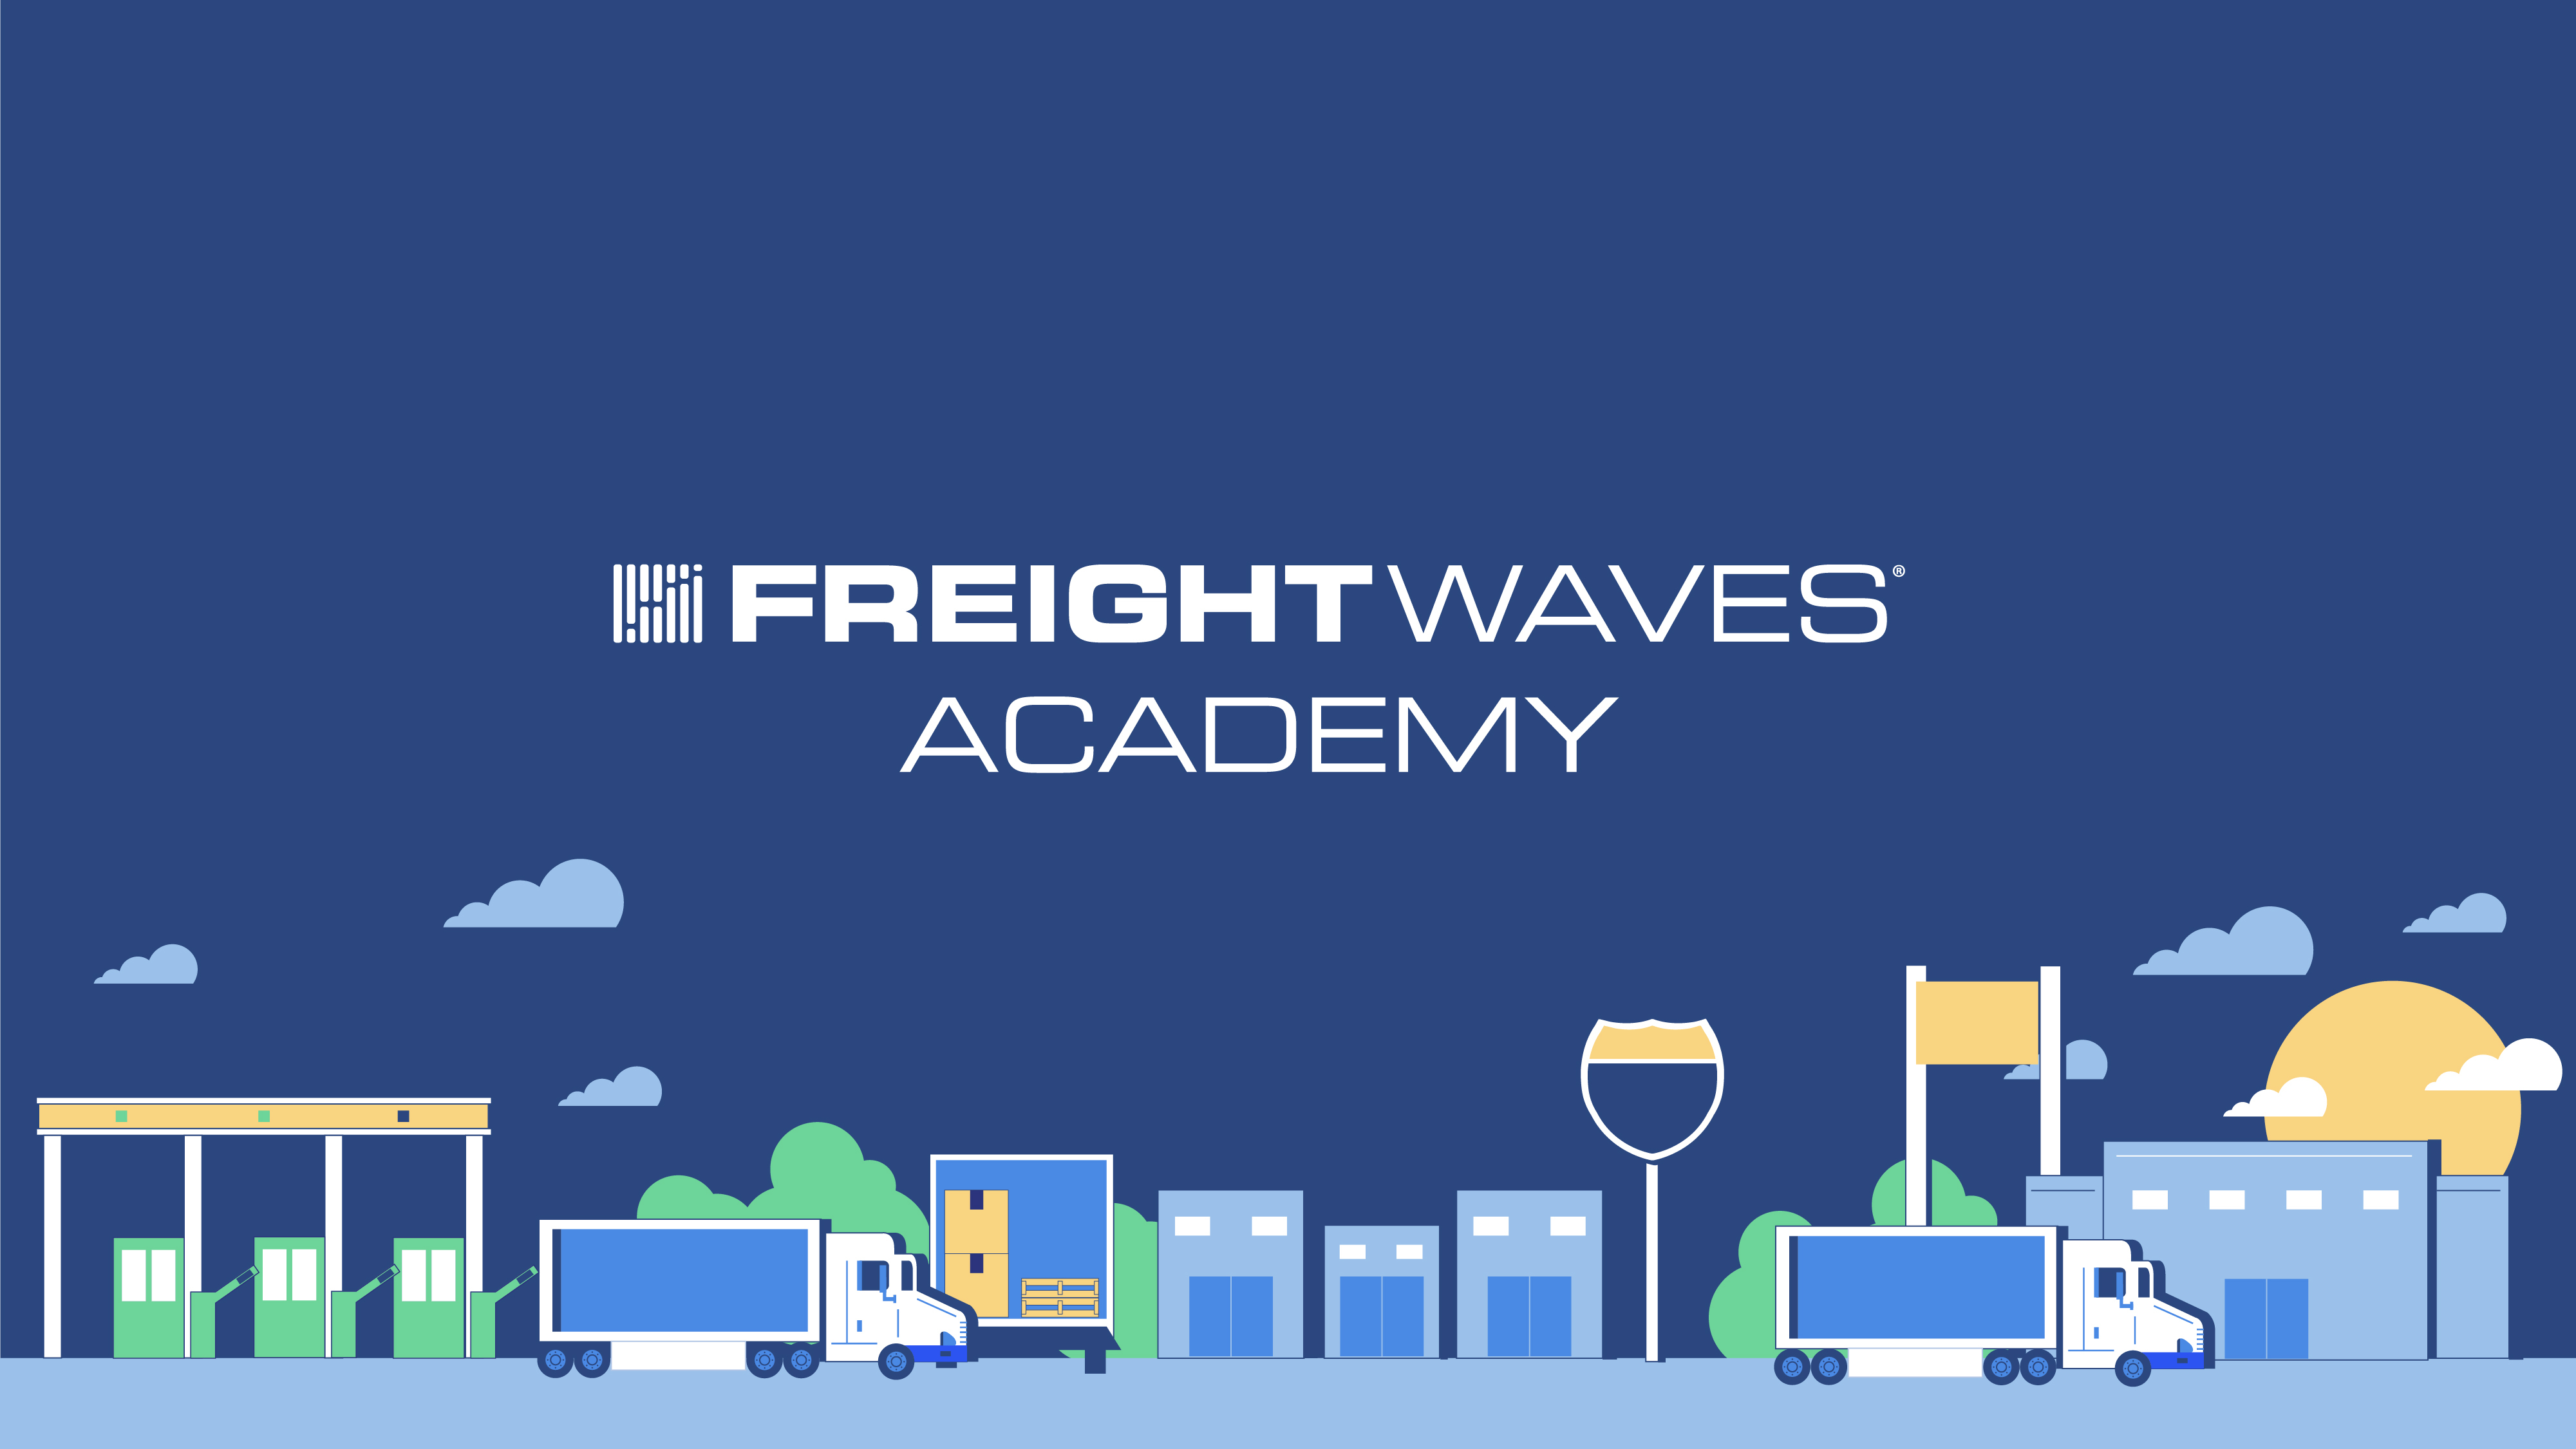 www.freightwaves.com